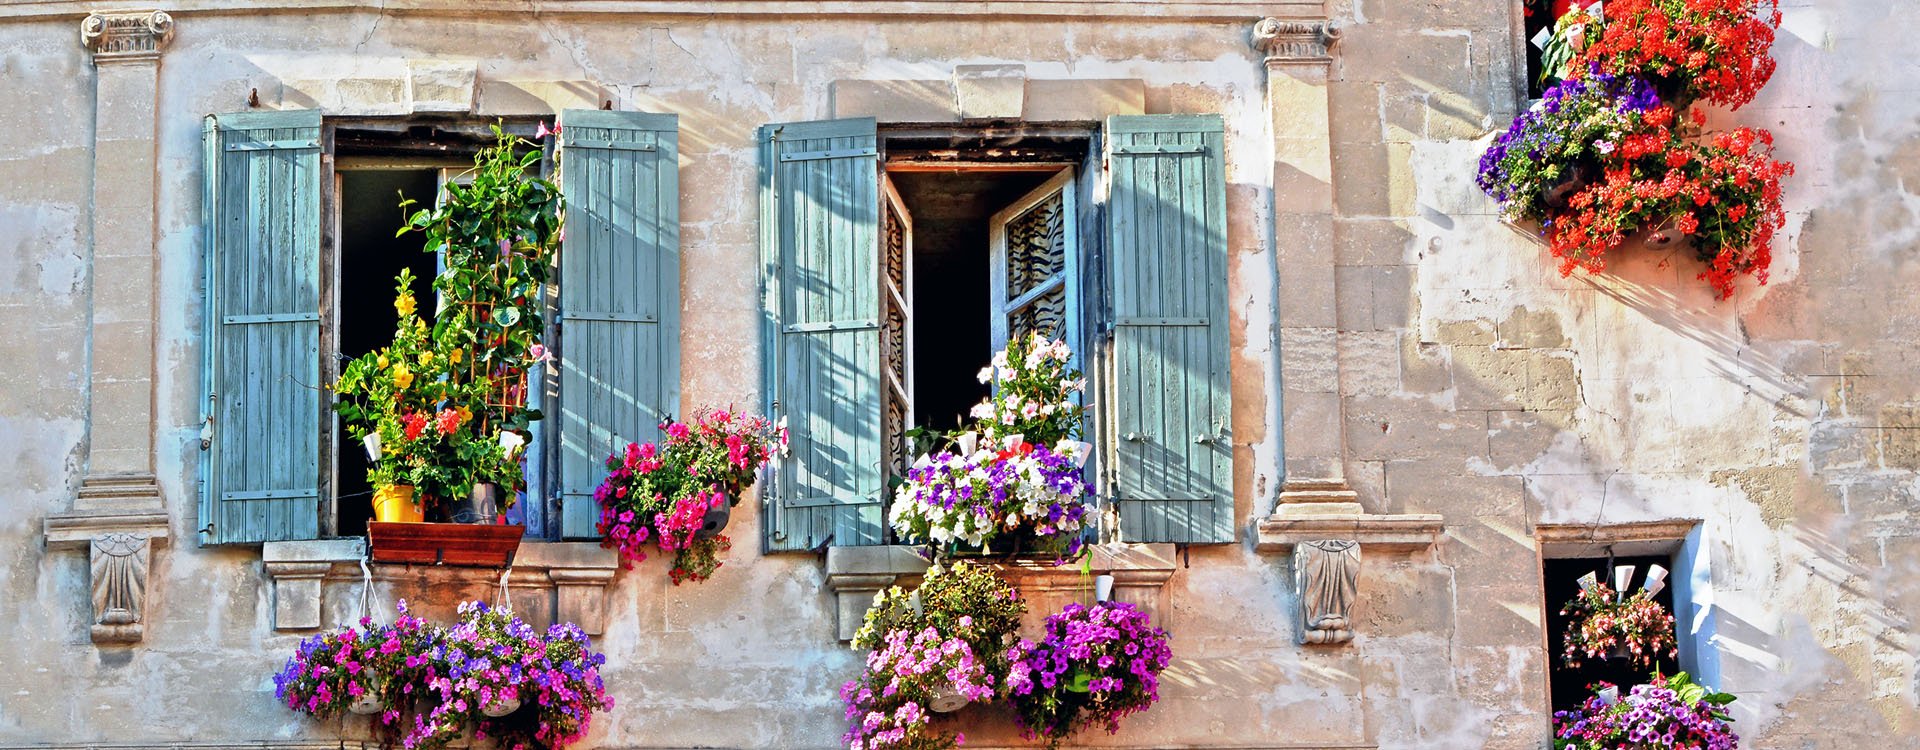 Gordes, Luberon, Vaucluse, Provence, France, Europe.